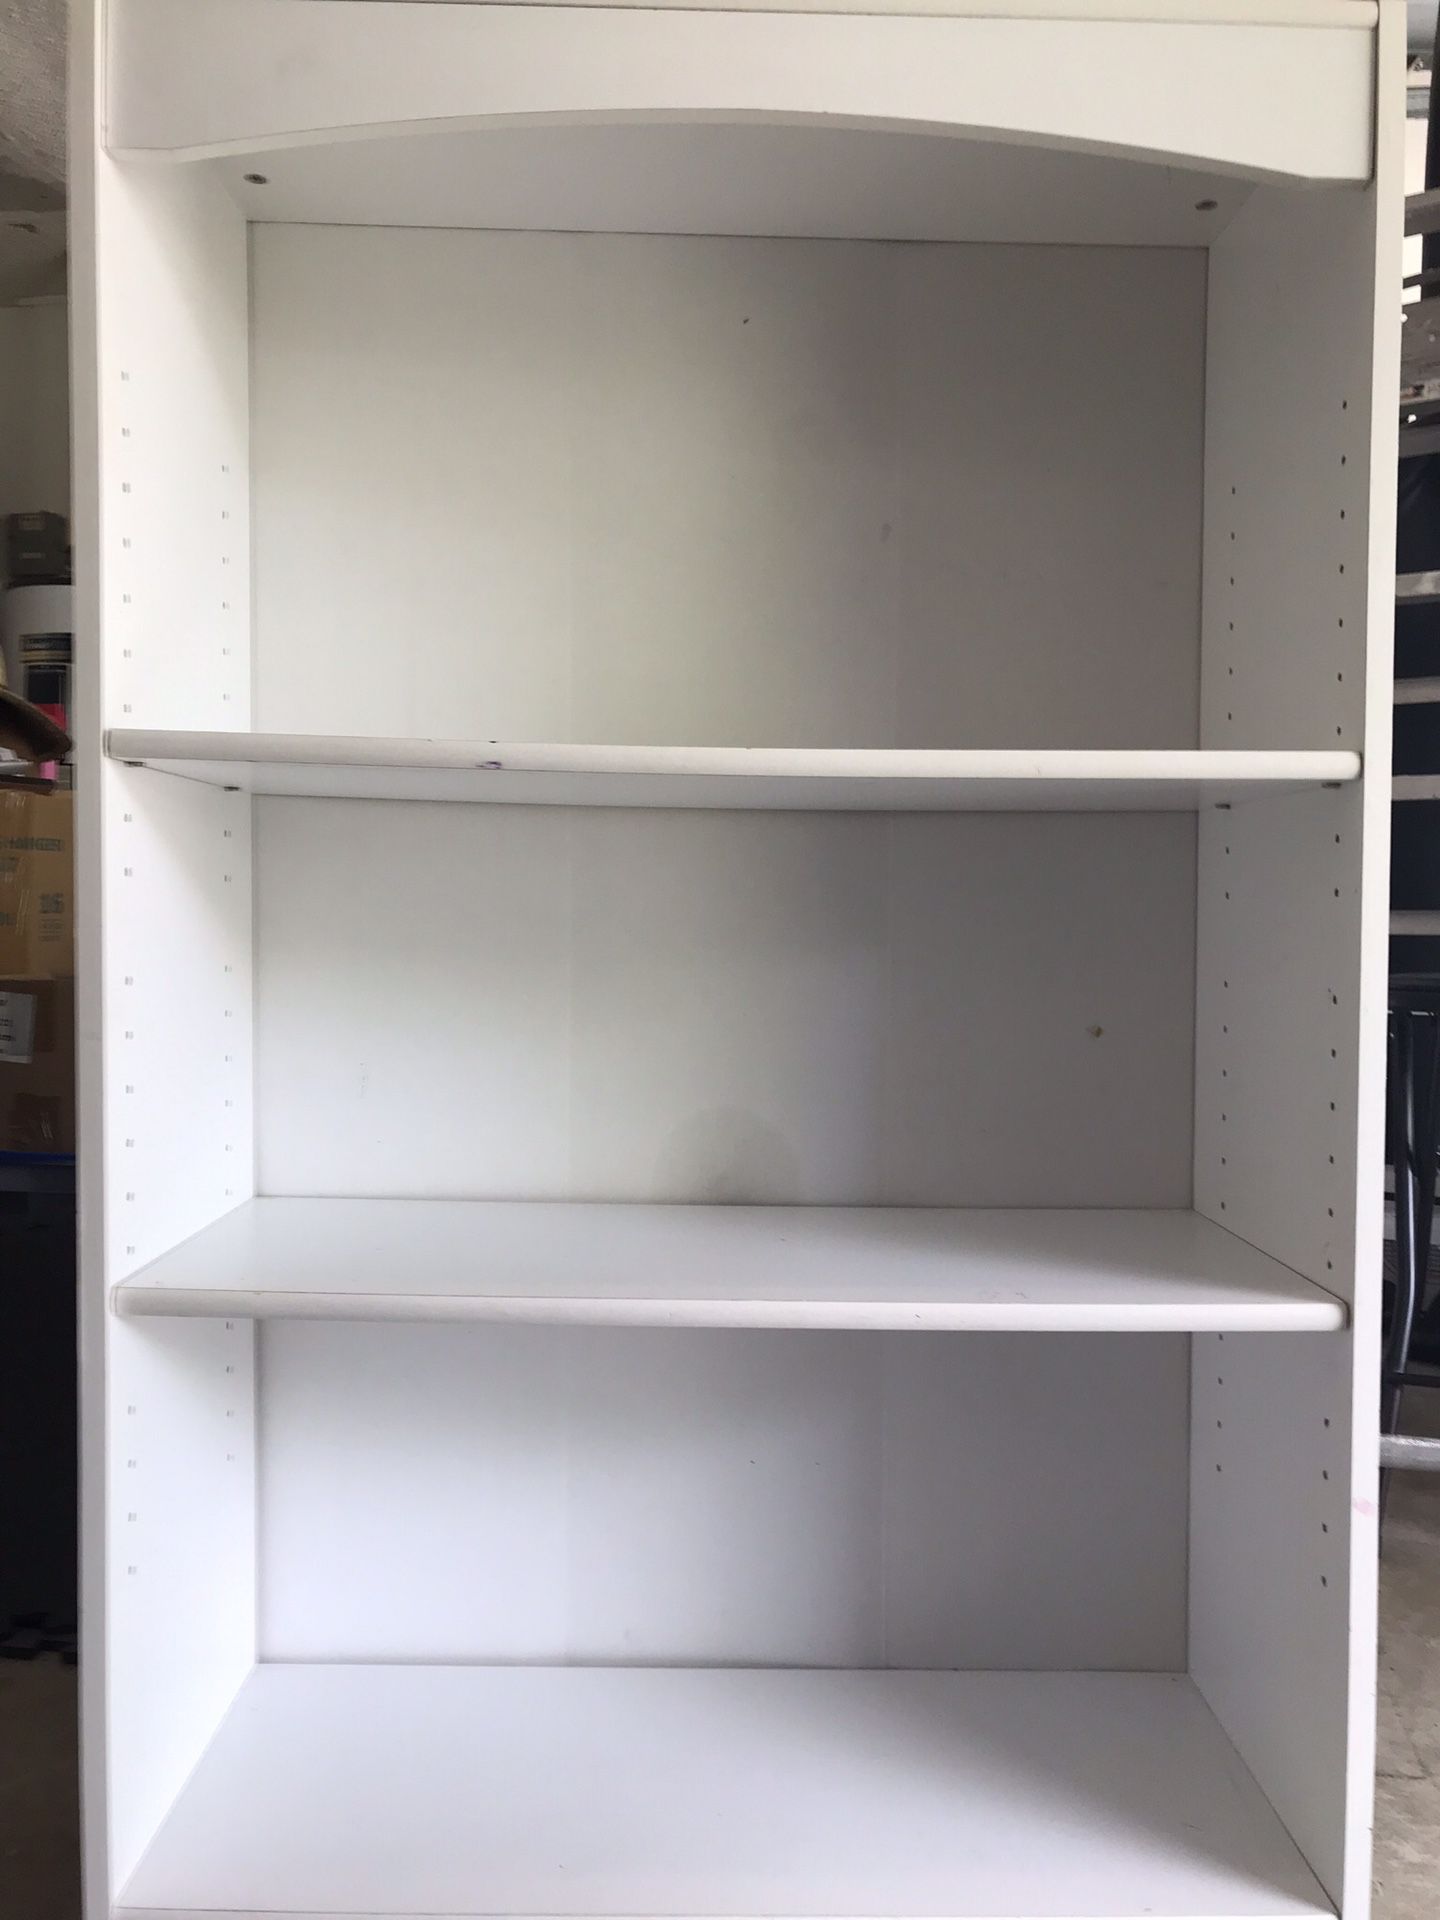 Three Shelf White Bookcase